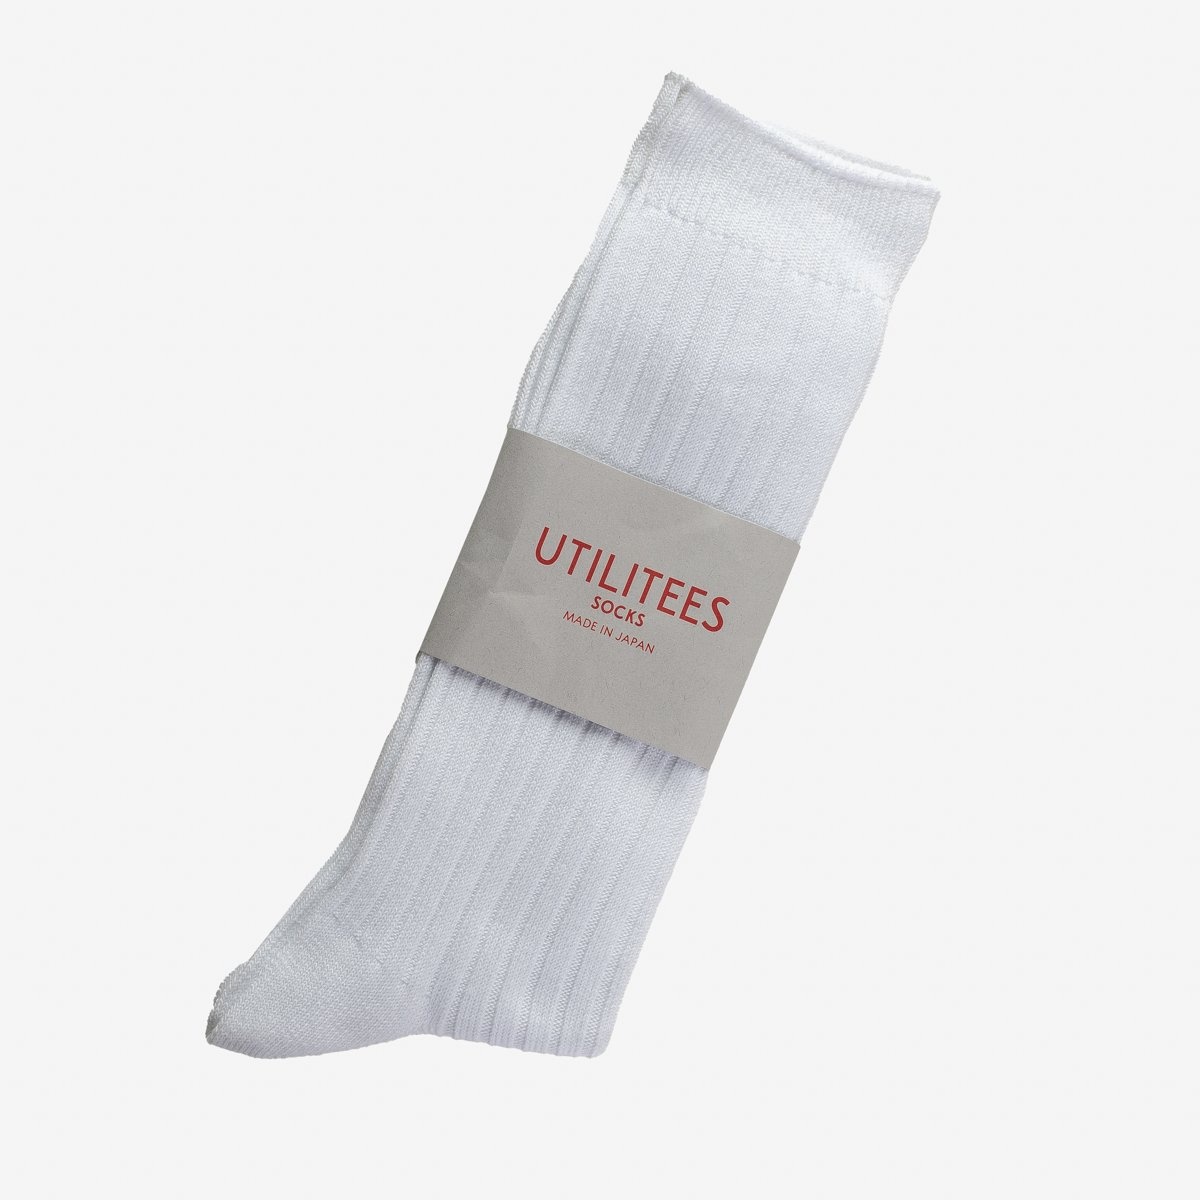 UTCS-WHT UTILITEES Mixed Cotton Crew Socks - White - 2